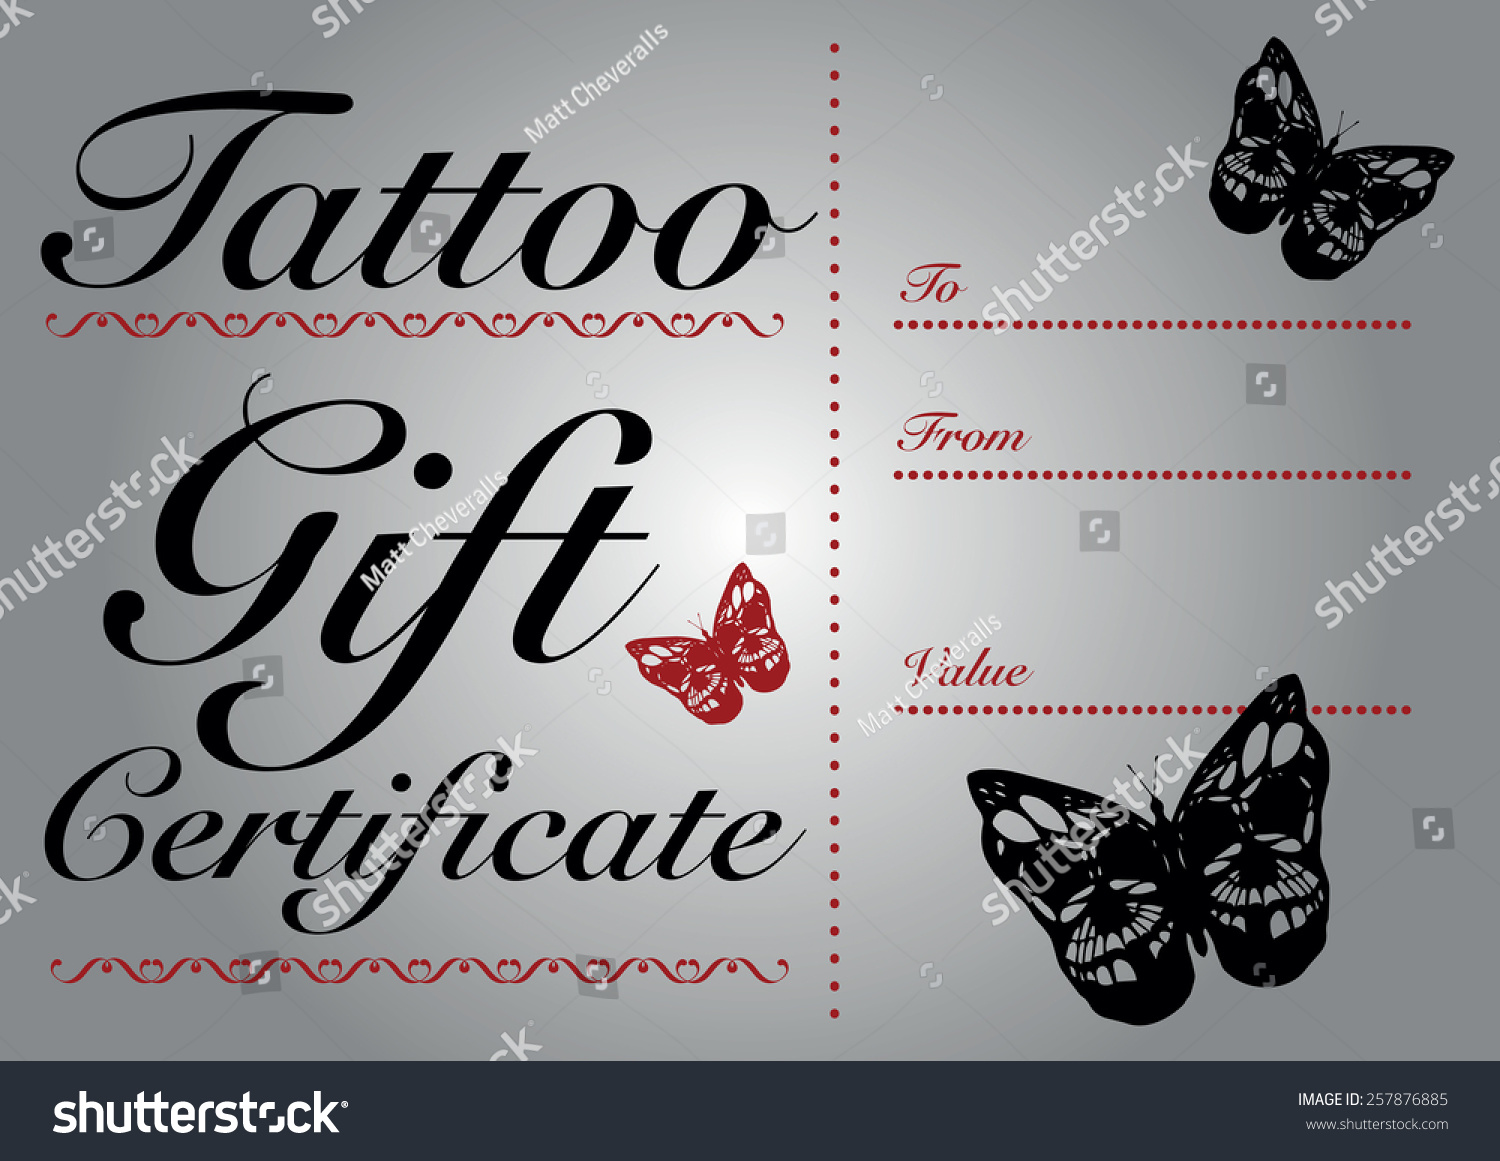 Sie verwenden zurzeit eine ältere Browserversion, und Ihr Website Within Tattoo Gift Certificate Template